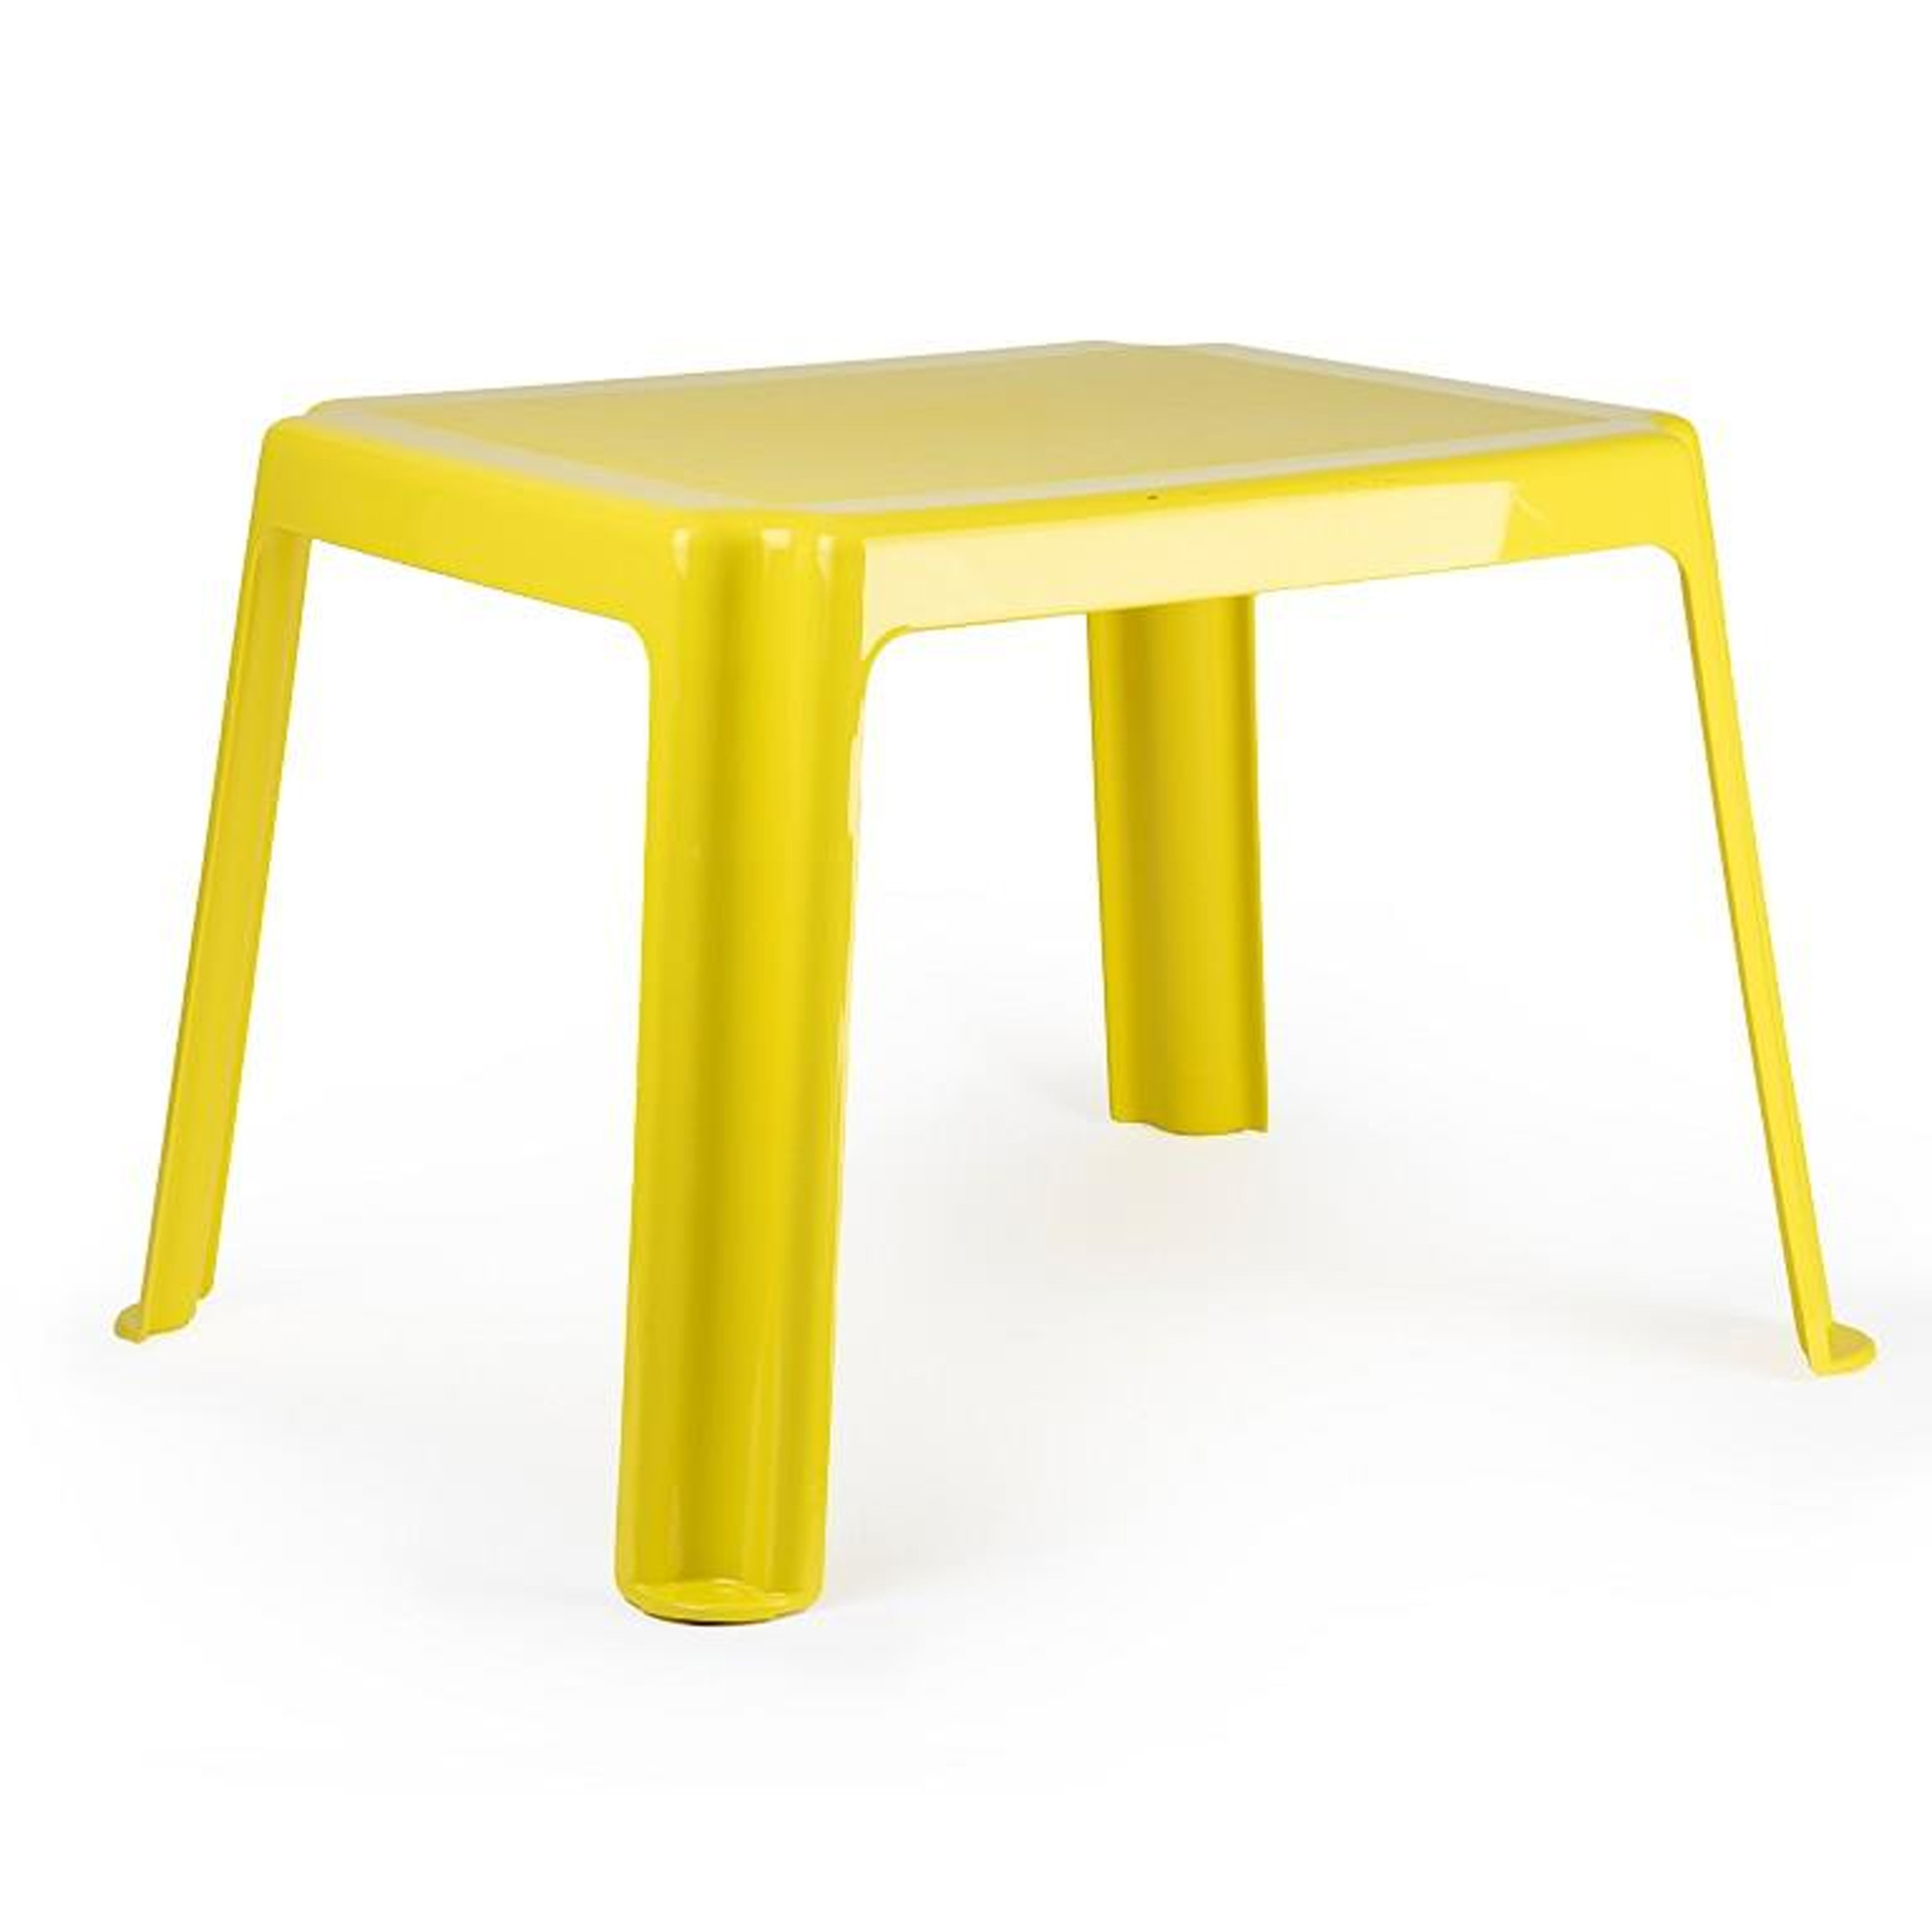 Kunststof kindertafel-bijzettafel geel 55 x 66 x 43 cm camping-tuin-kinderkamer